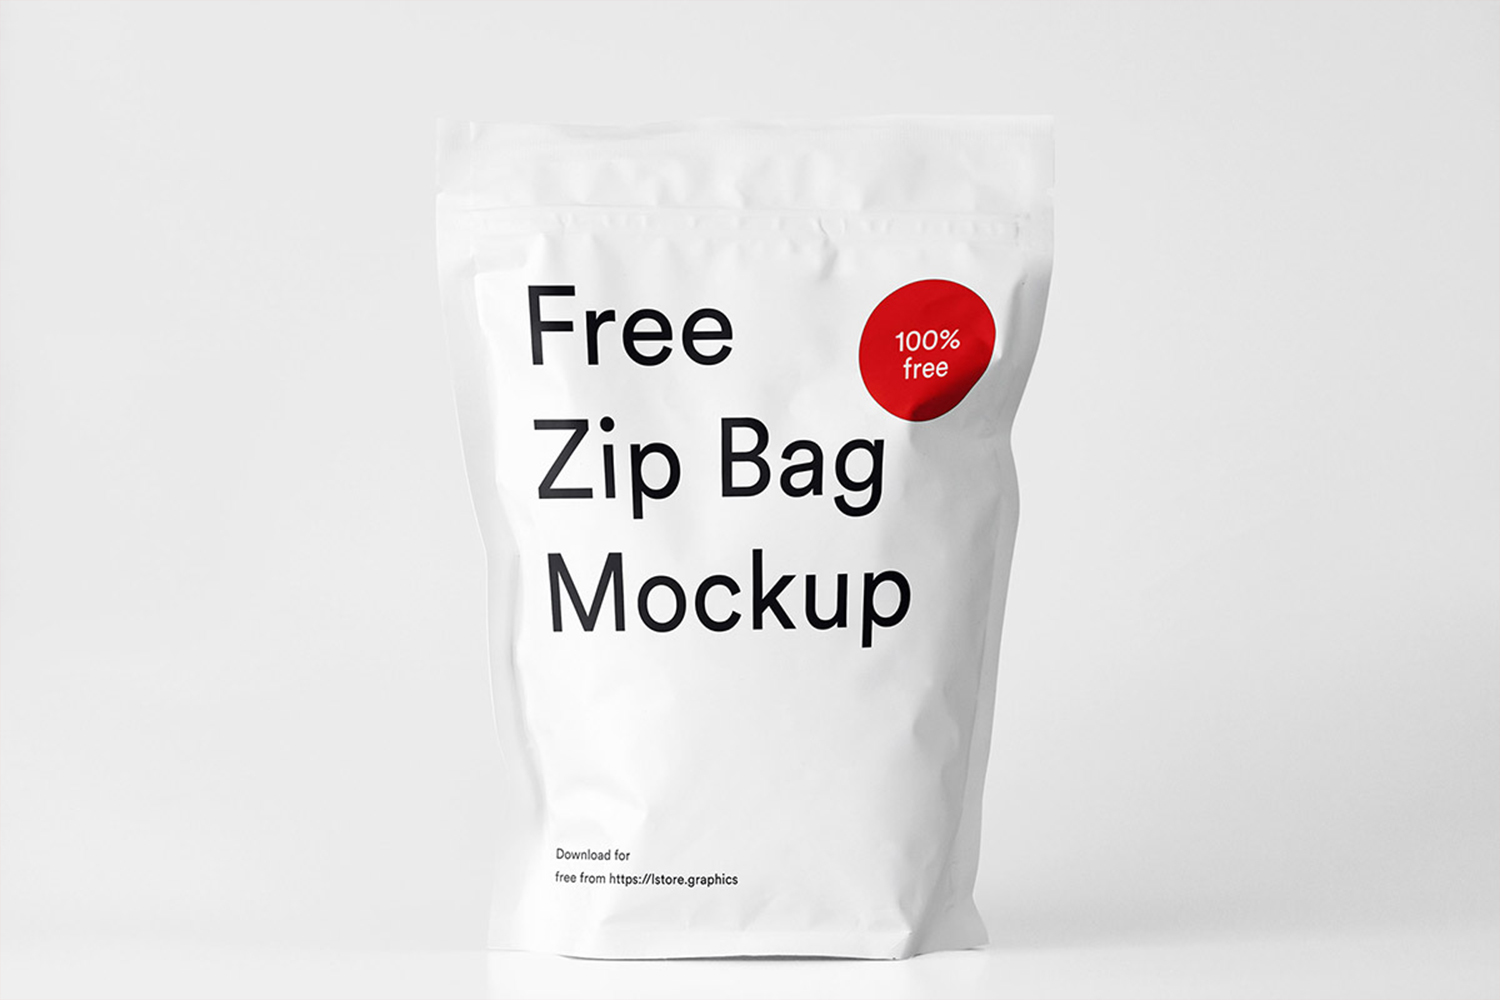 Zip Bag Mockup Free Download